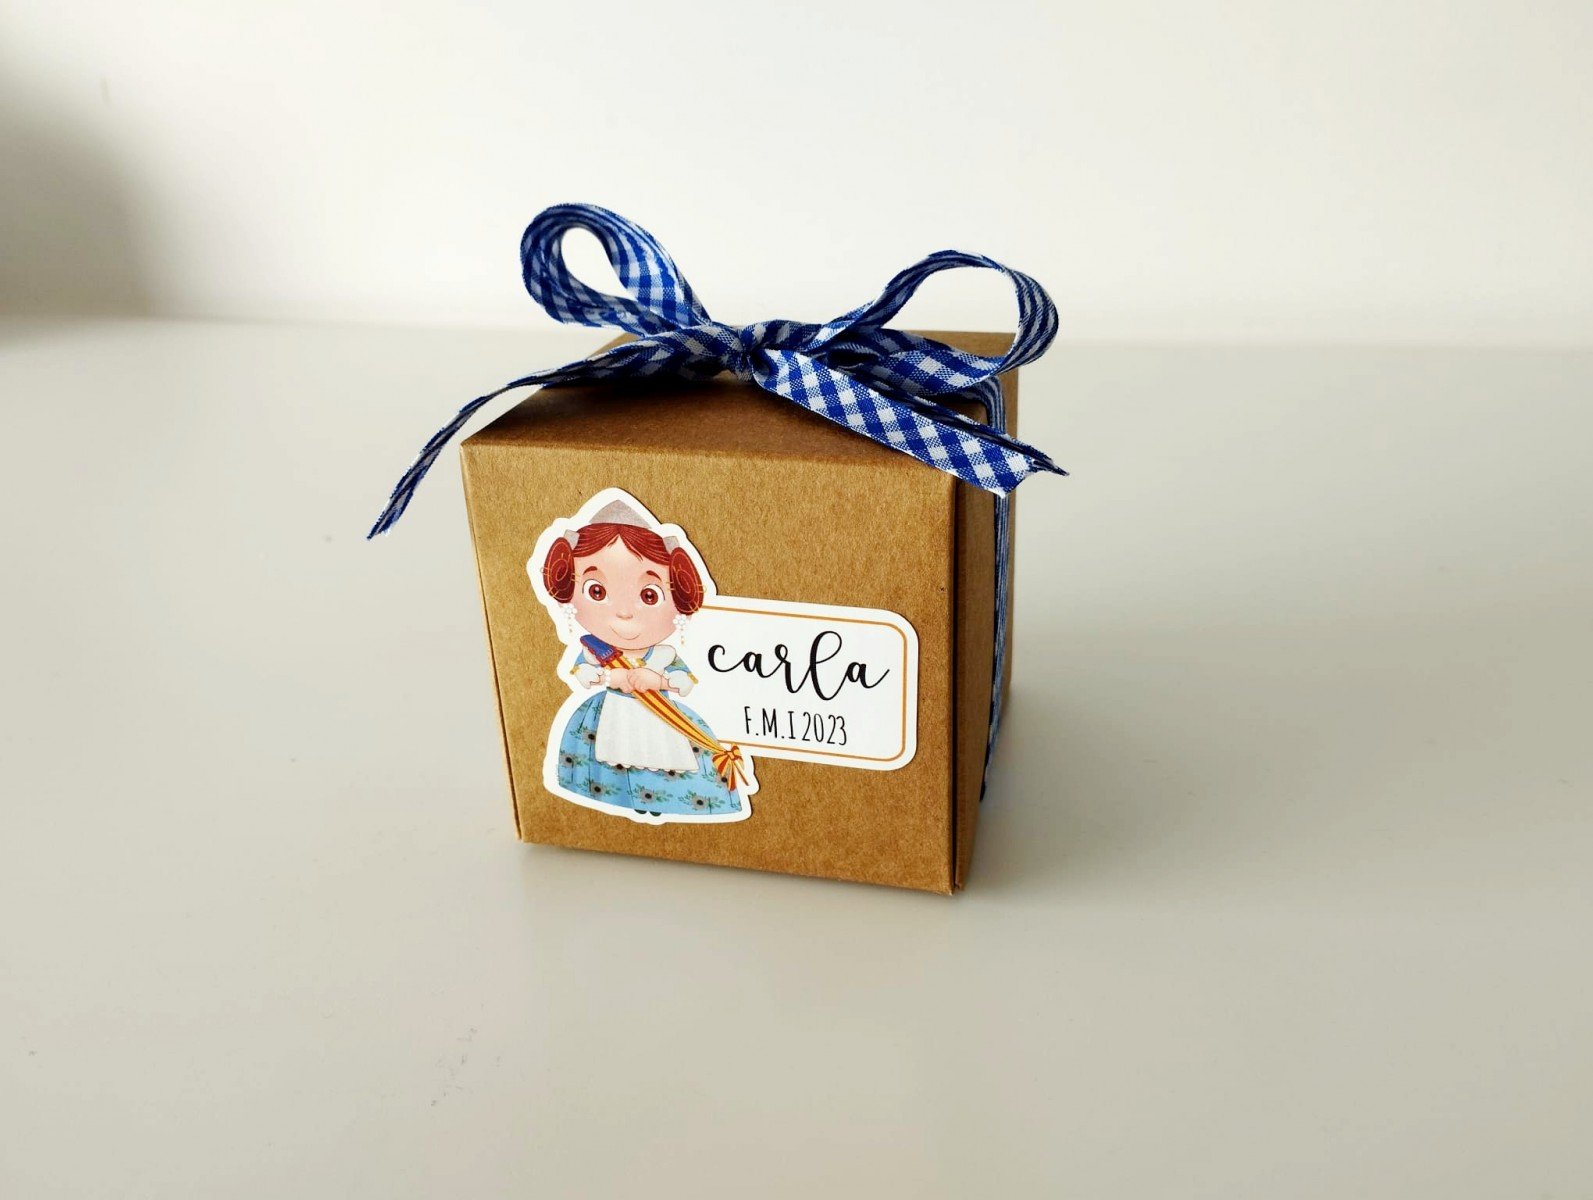 Mini Detalles- Caja de regalos personalizados 15 – Mini detalles